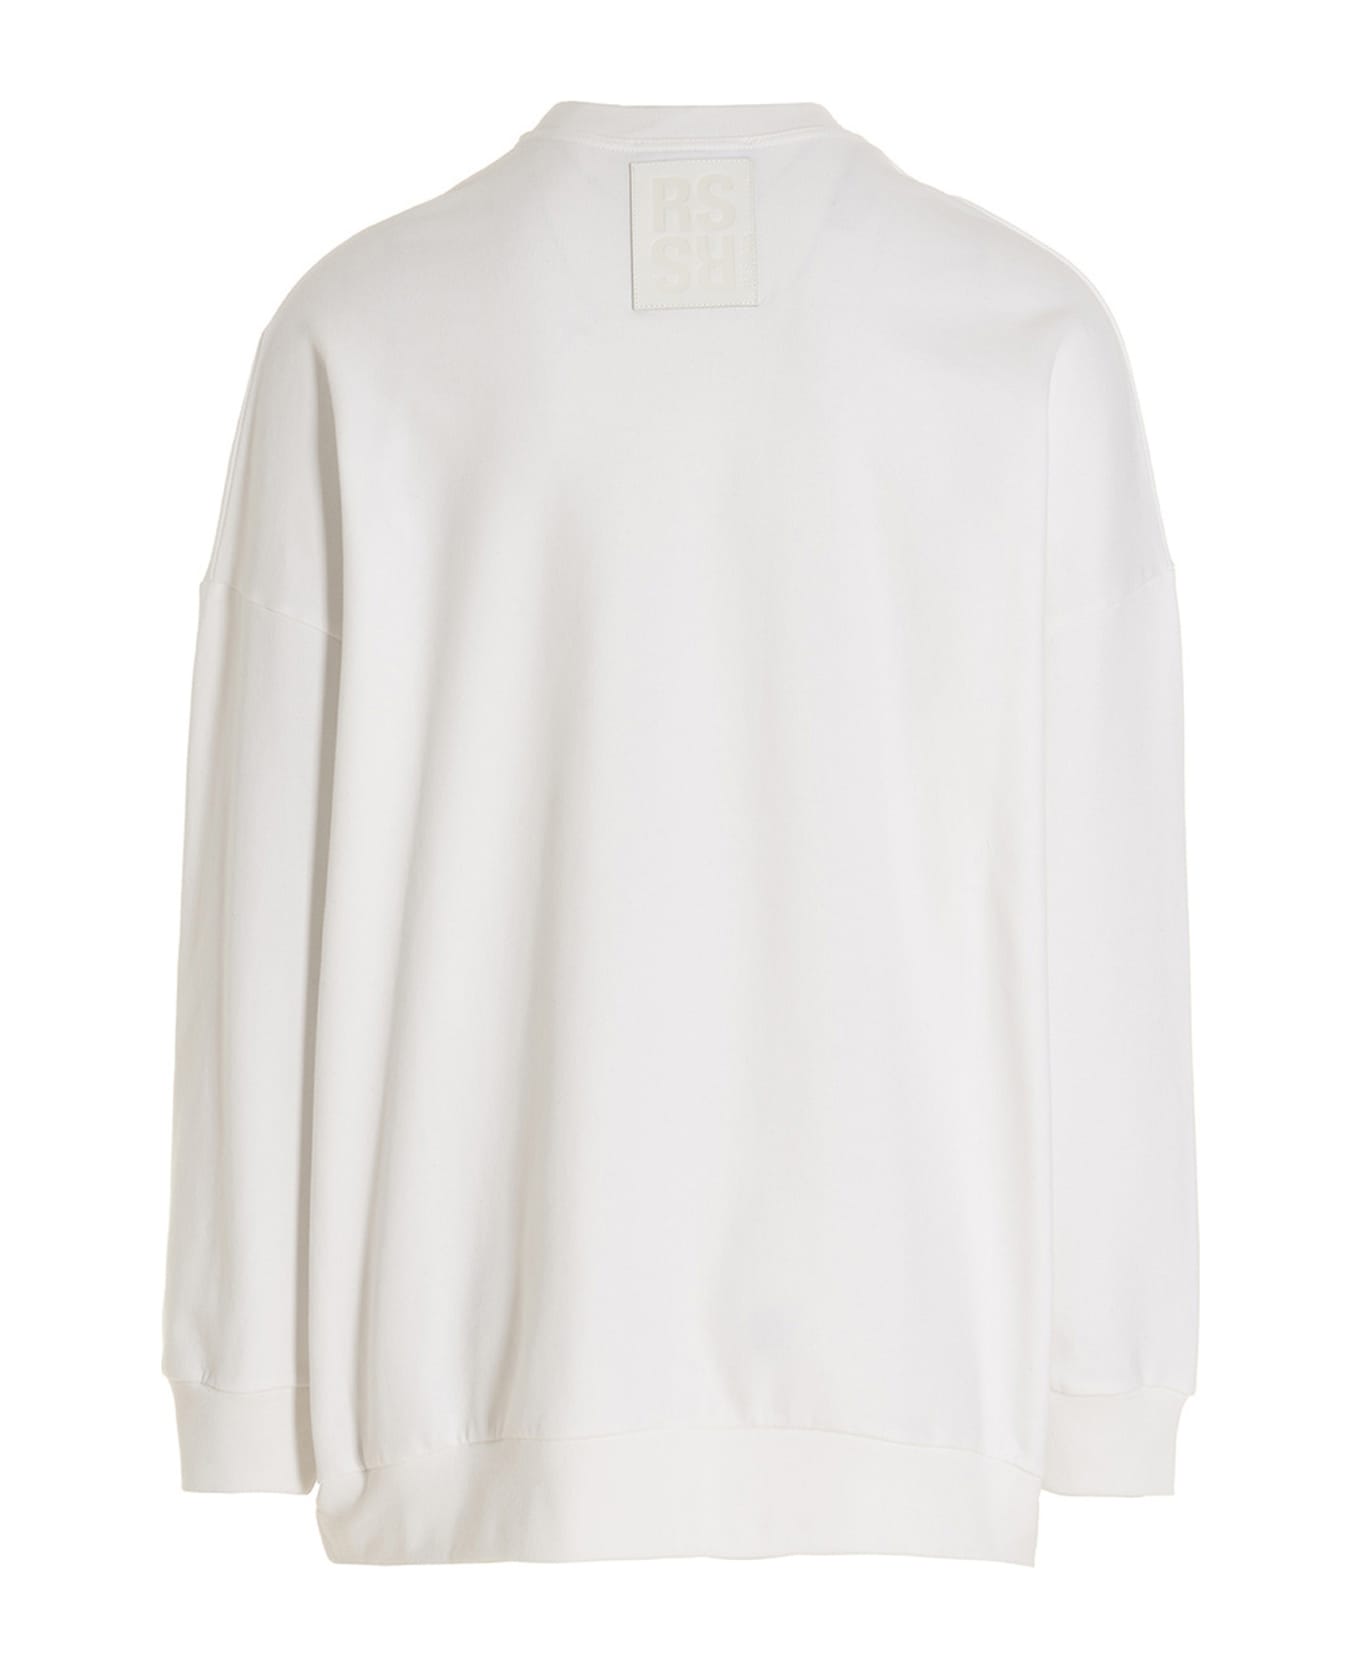 Raf Simons 'r Sweatshirt - White/Black